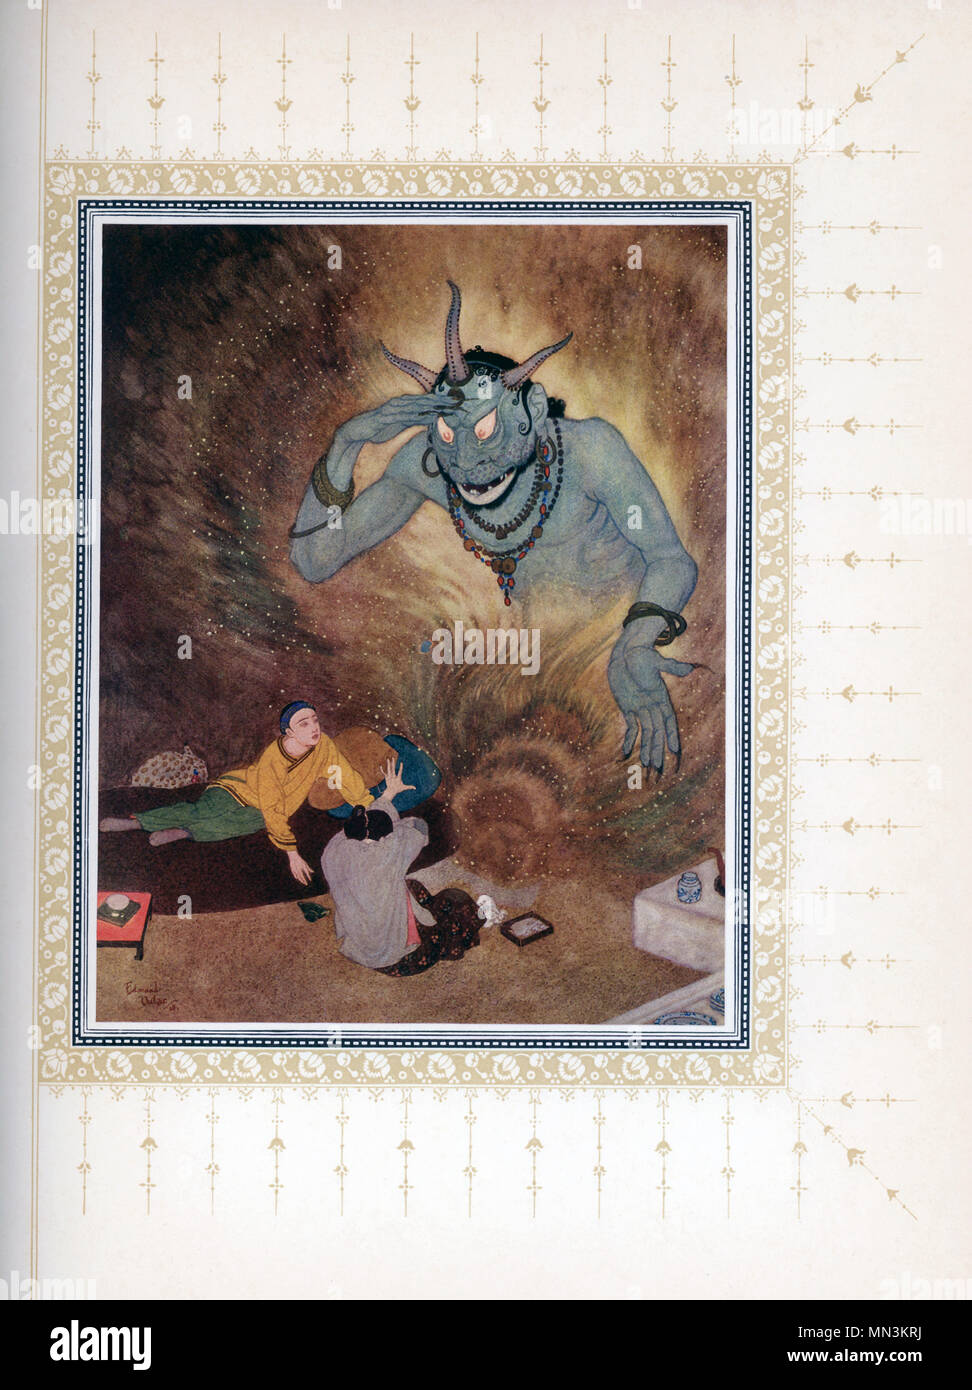 Diese frühen 1900s Abbildung zeigt Aladdin und die Efrite. Die Geschichte  ist eine märchens und entstand wahrscheinlich in den Nahen Osten. Seine  Geschichte ist oft verbunden mit und/oder in den Tausend und